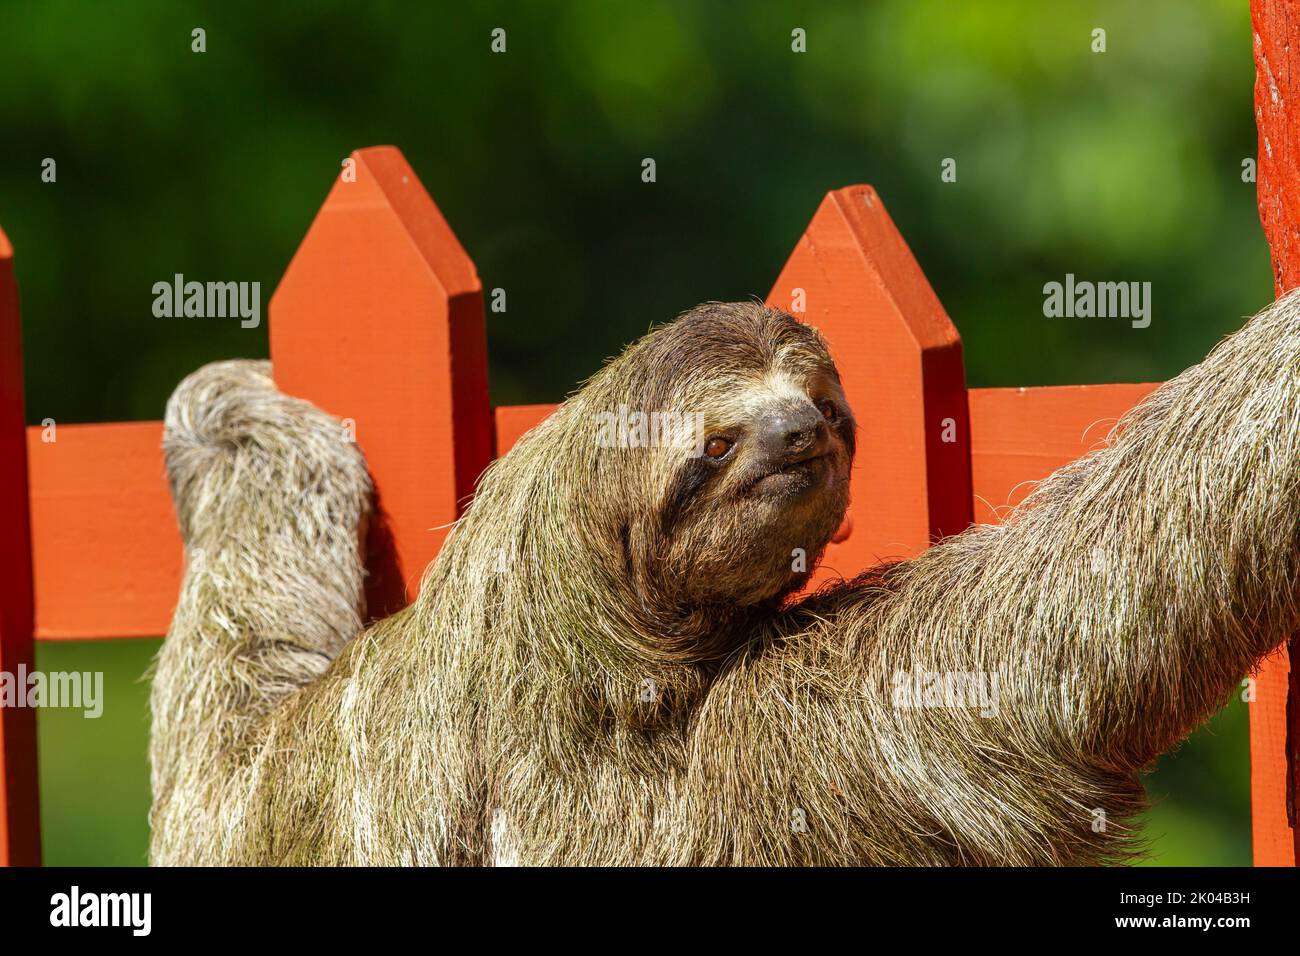 Sloth a tre punte (Bradypus infuscatus), primo piano, salendo lungo una recinzione per andare da un albero all'altro Foto Stock